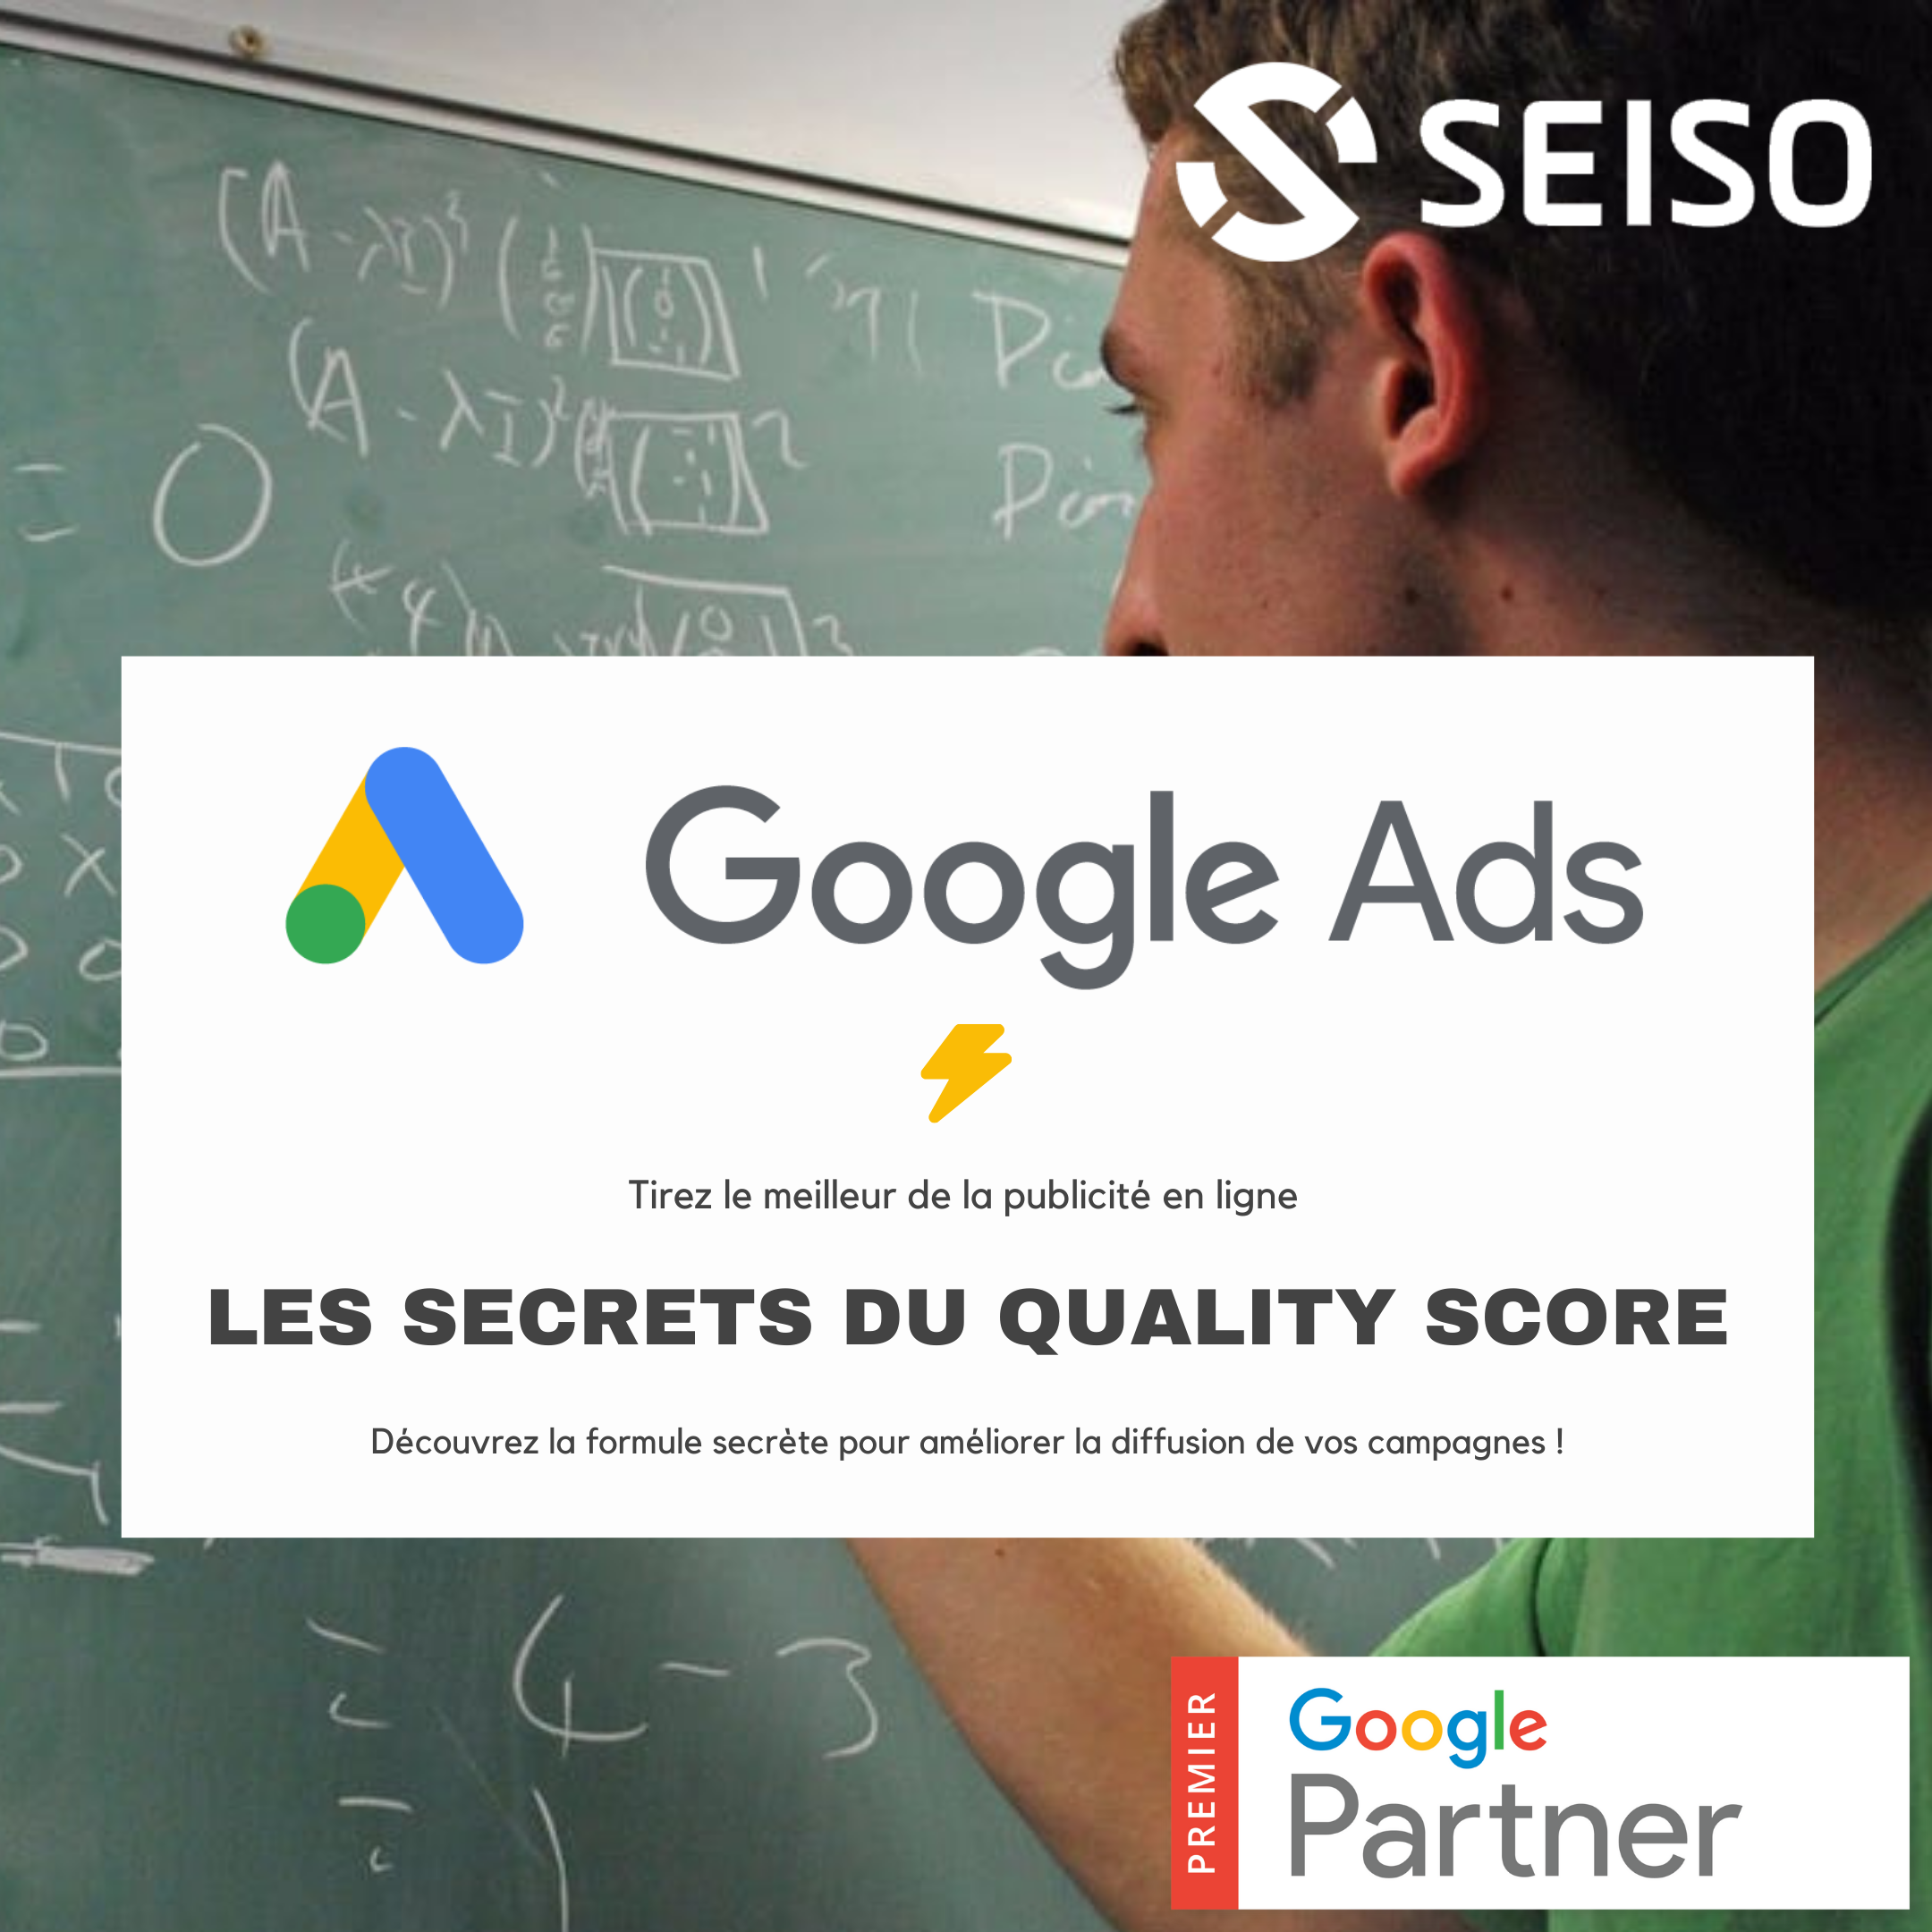 Google Ads : Le calcul du Quality Score enfin révélé !